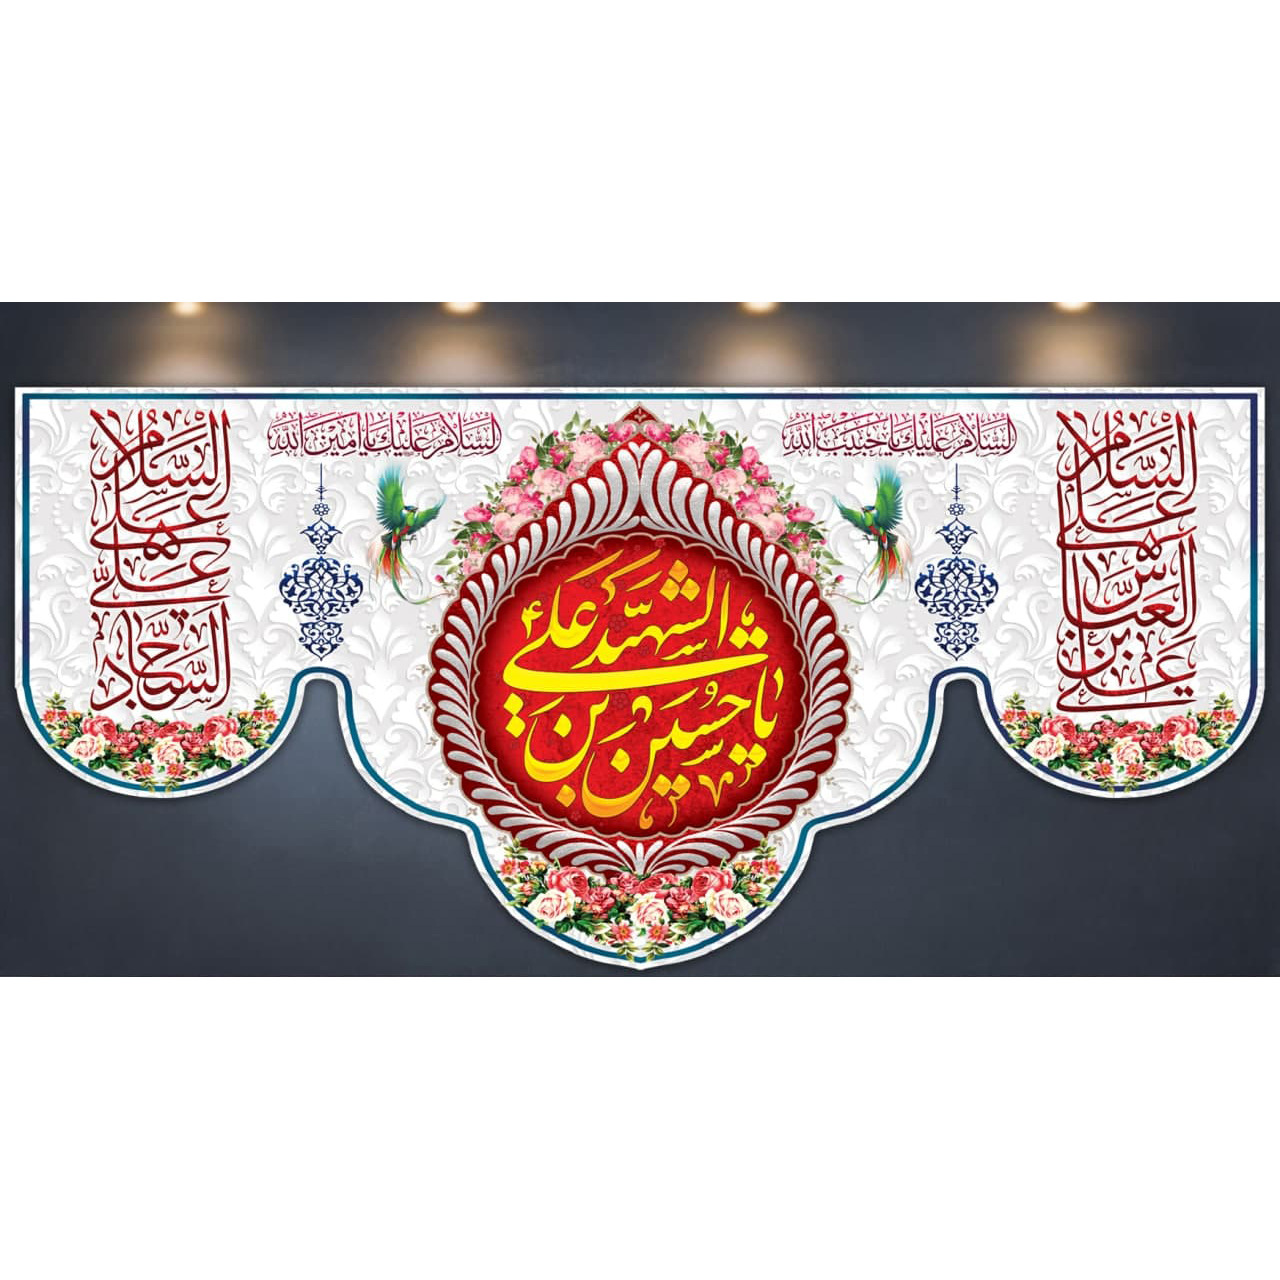 پرچم مدل ولادت امام حسین (ع) کد 50009-14070